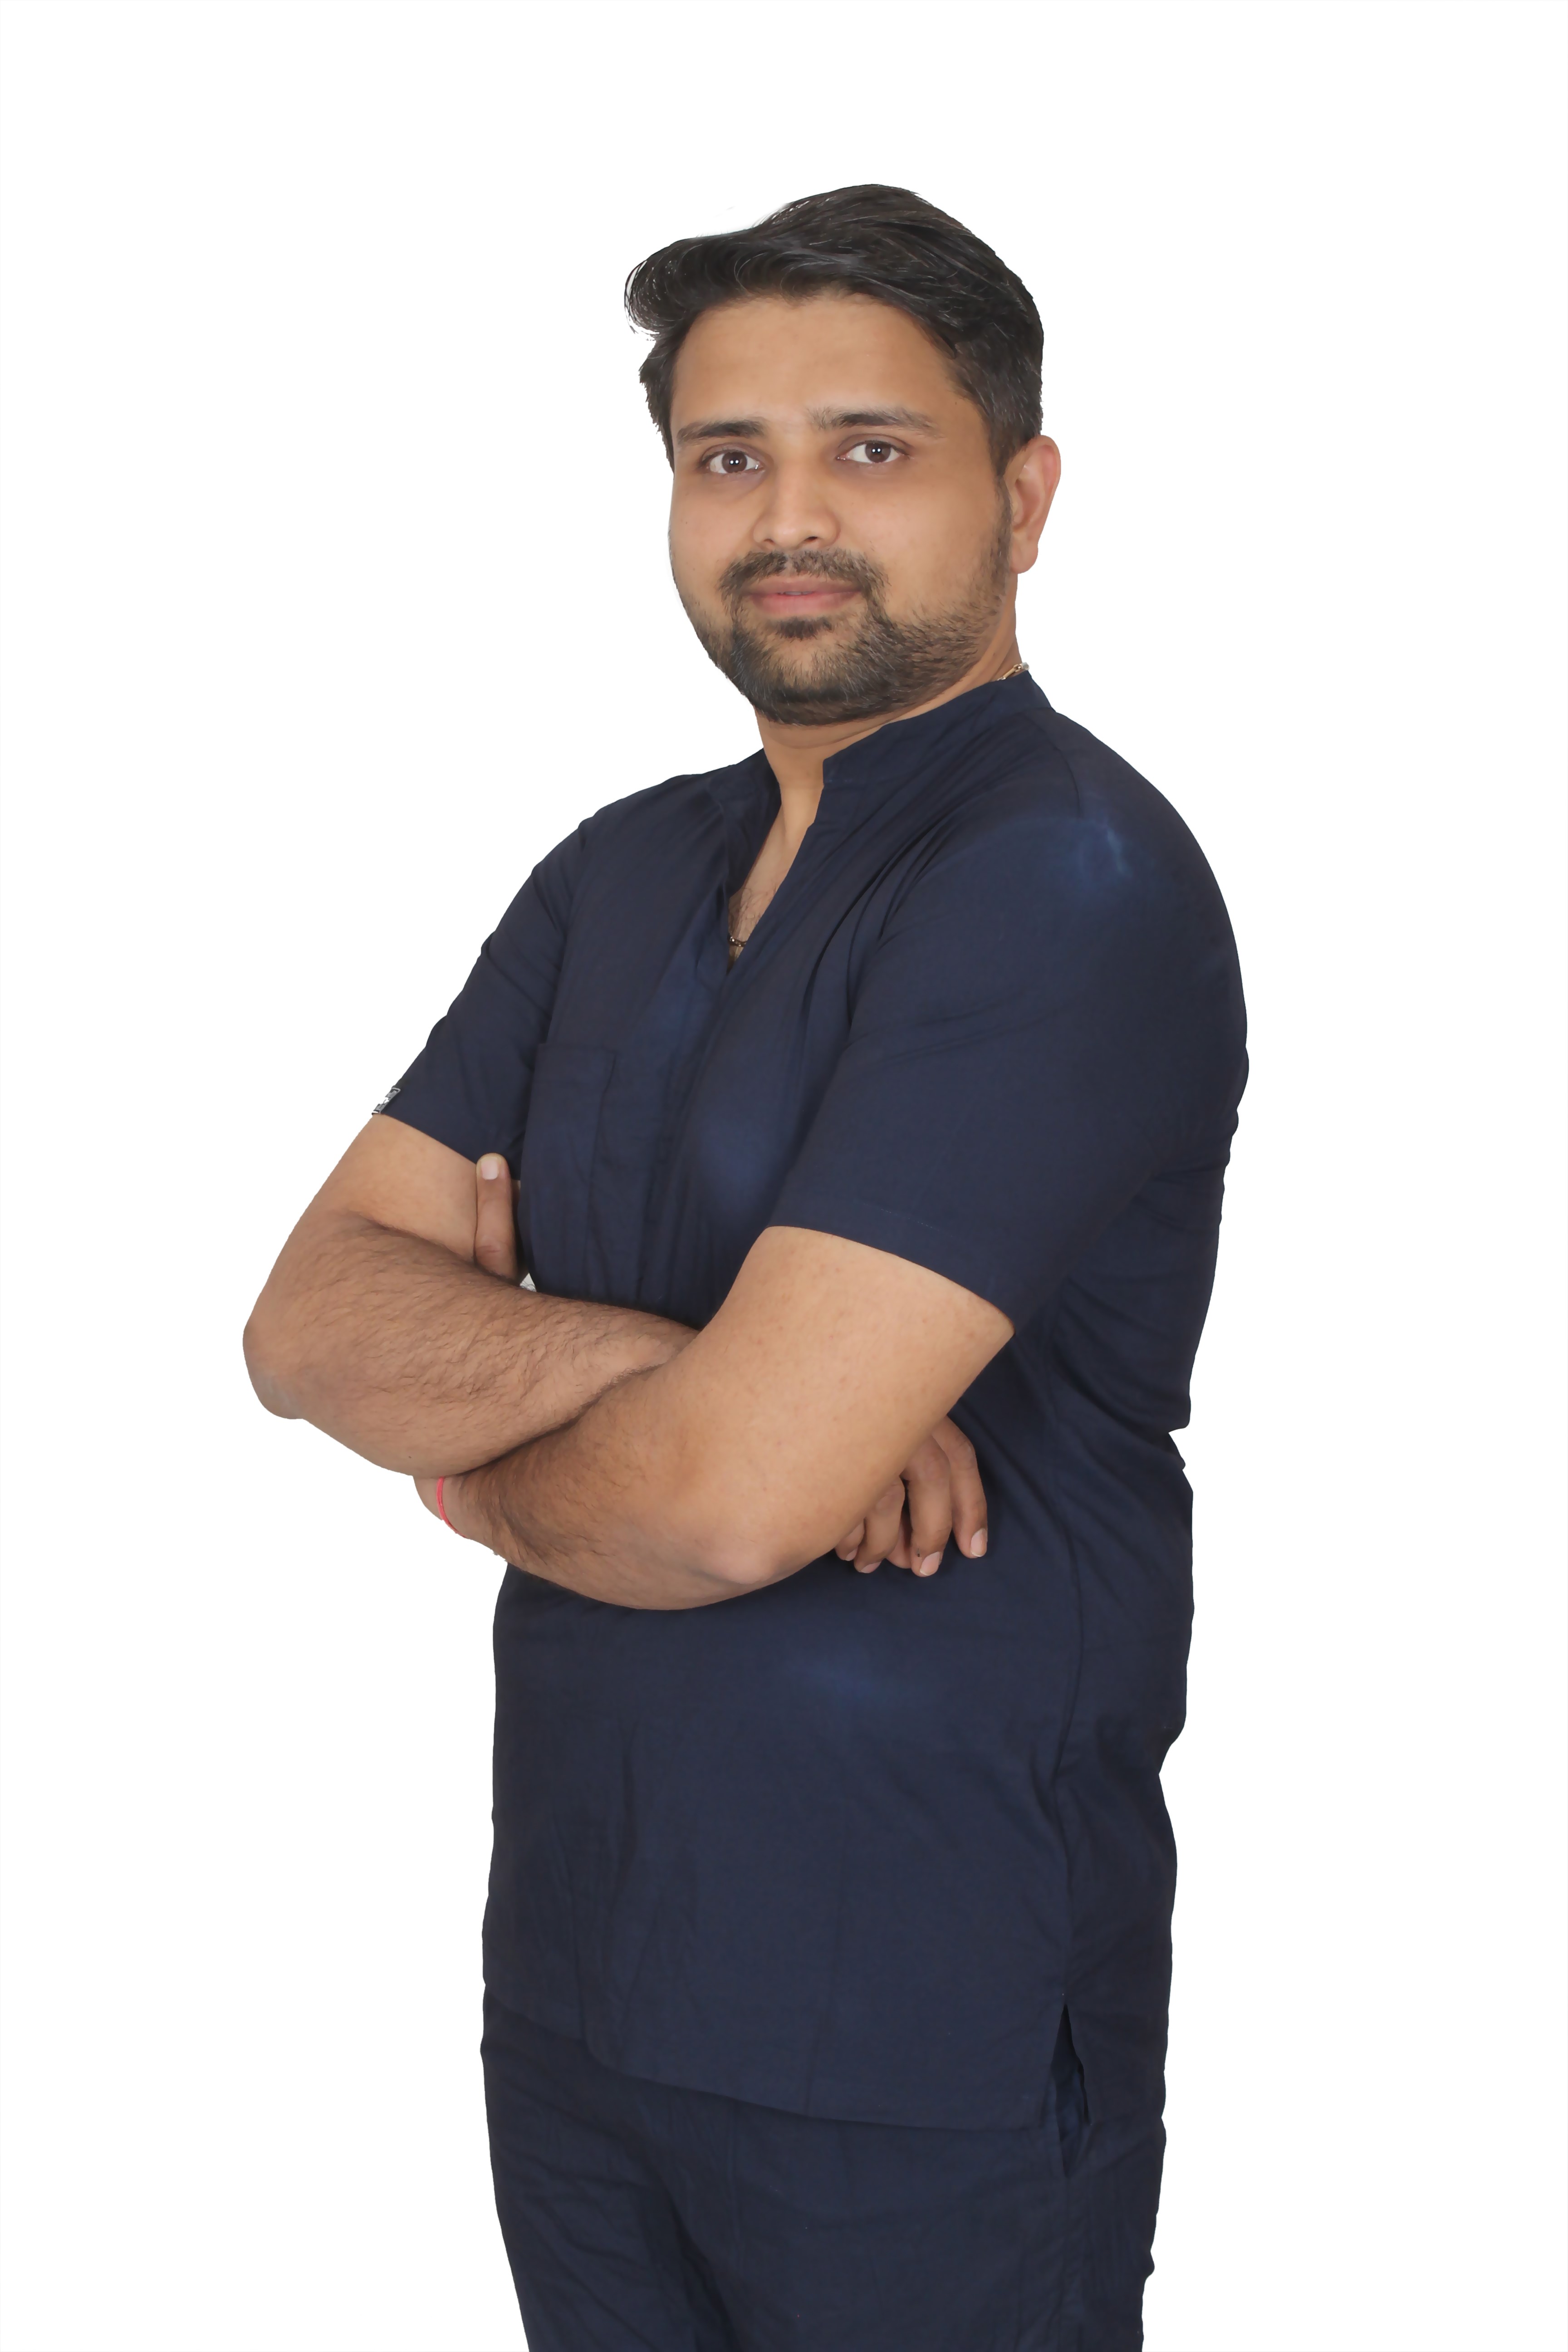 Dr. Bhavik N. Patel